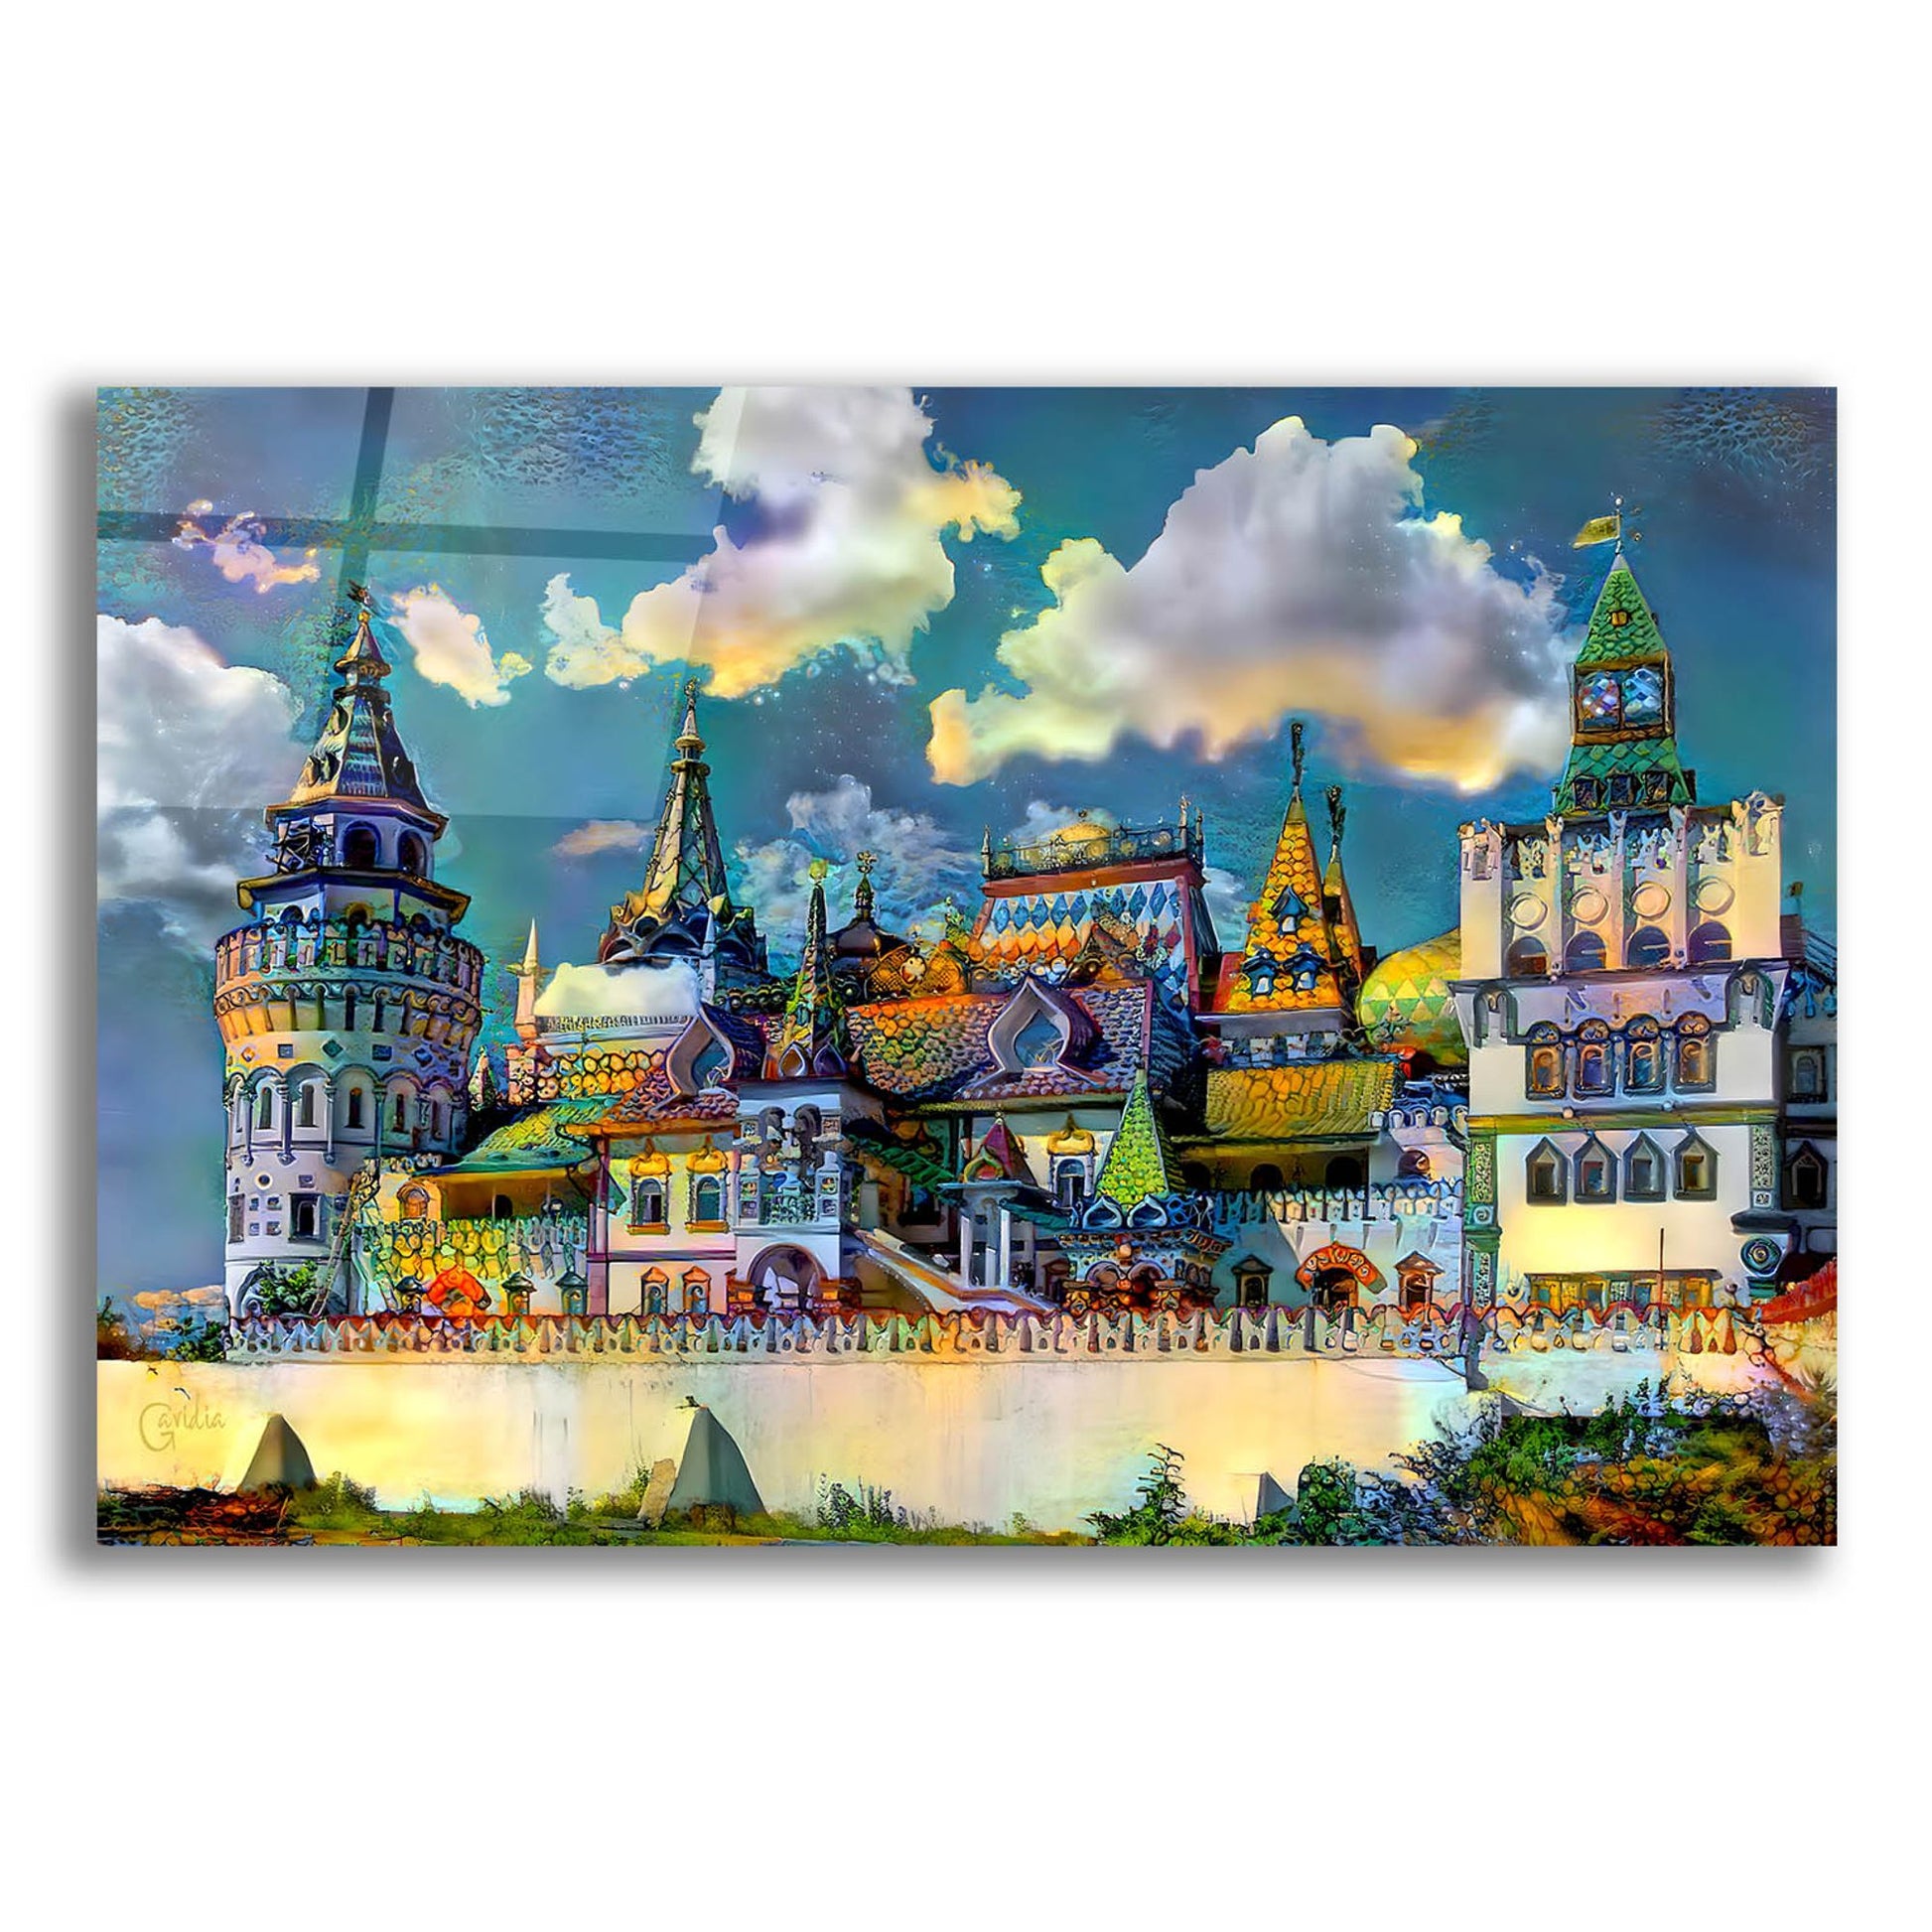 Epic Art 'Moscow Russia Izmailovsky Market' by Pedro Gavidia, Acrylic Glass Wall Art,16x12